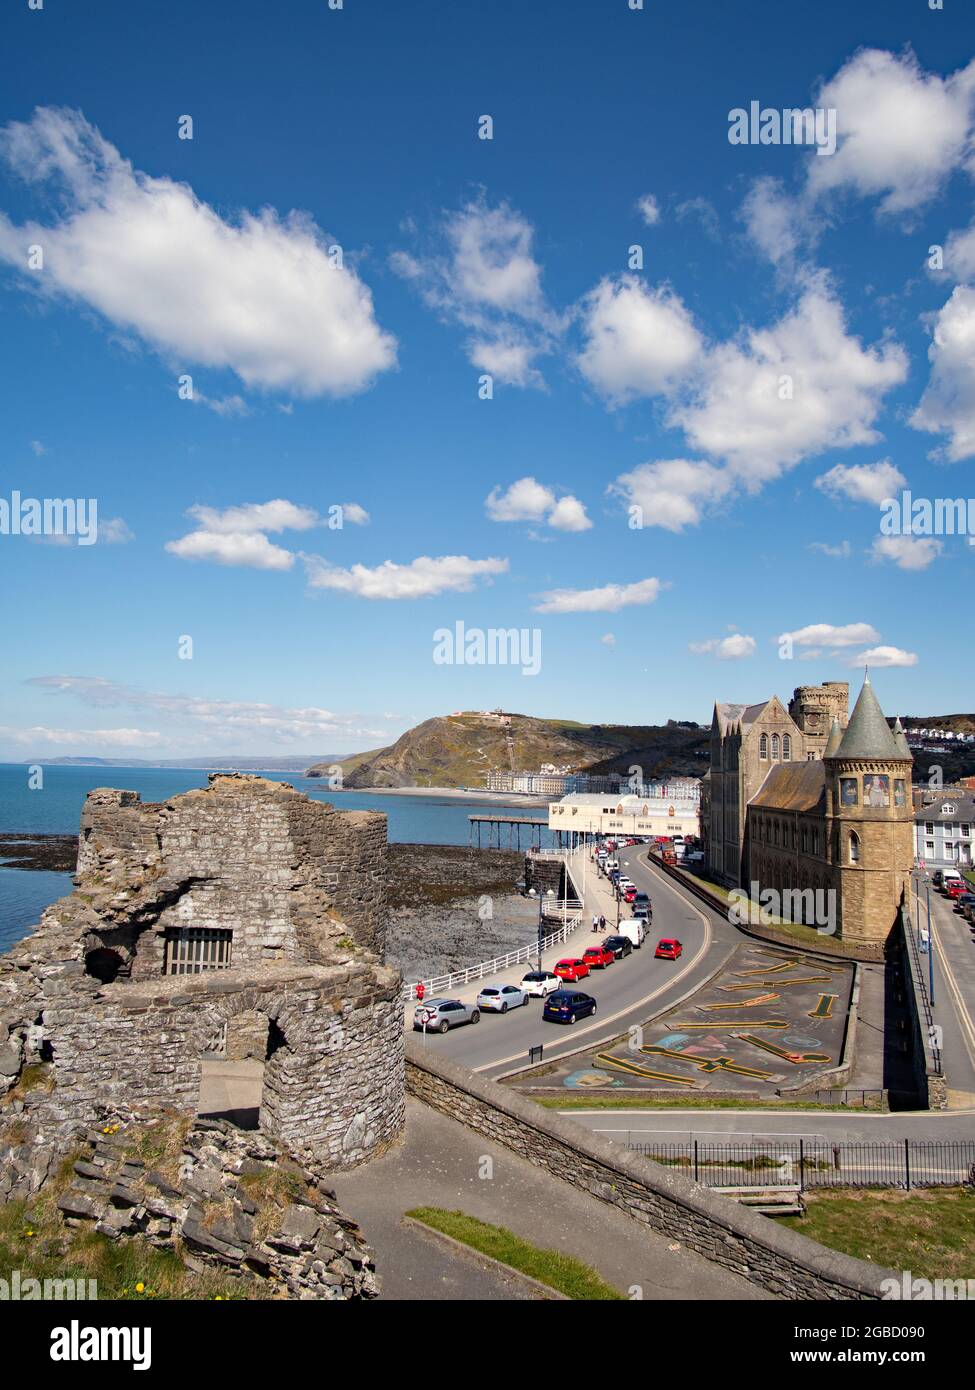 Promenade d'Aberystwyth depuis le château, ville balnéaire de Ceredigion, pays de Galles Royaume-Uni ciel bleu et nuages blancs. Banque D'Images